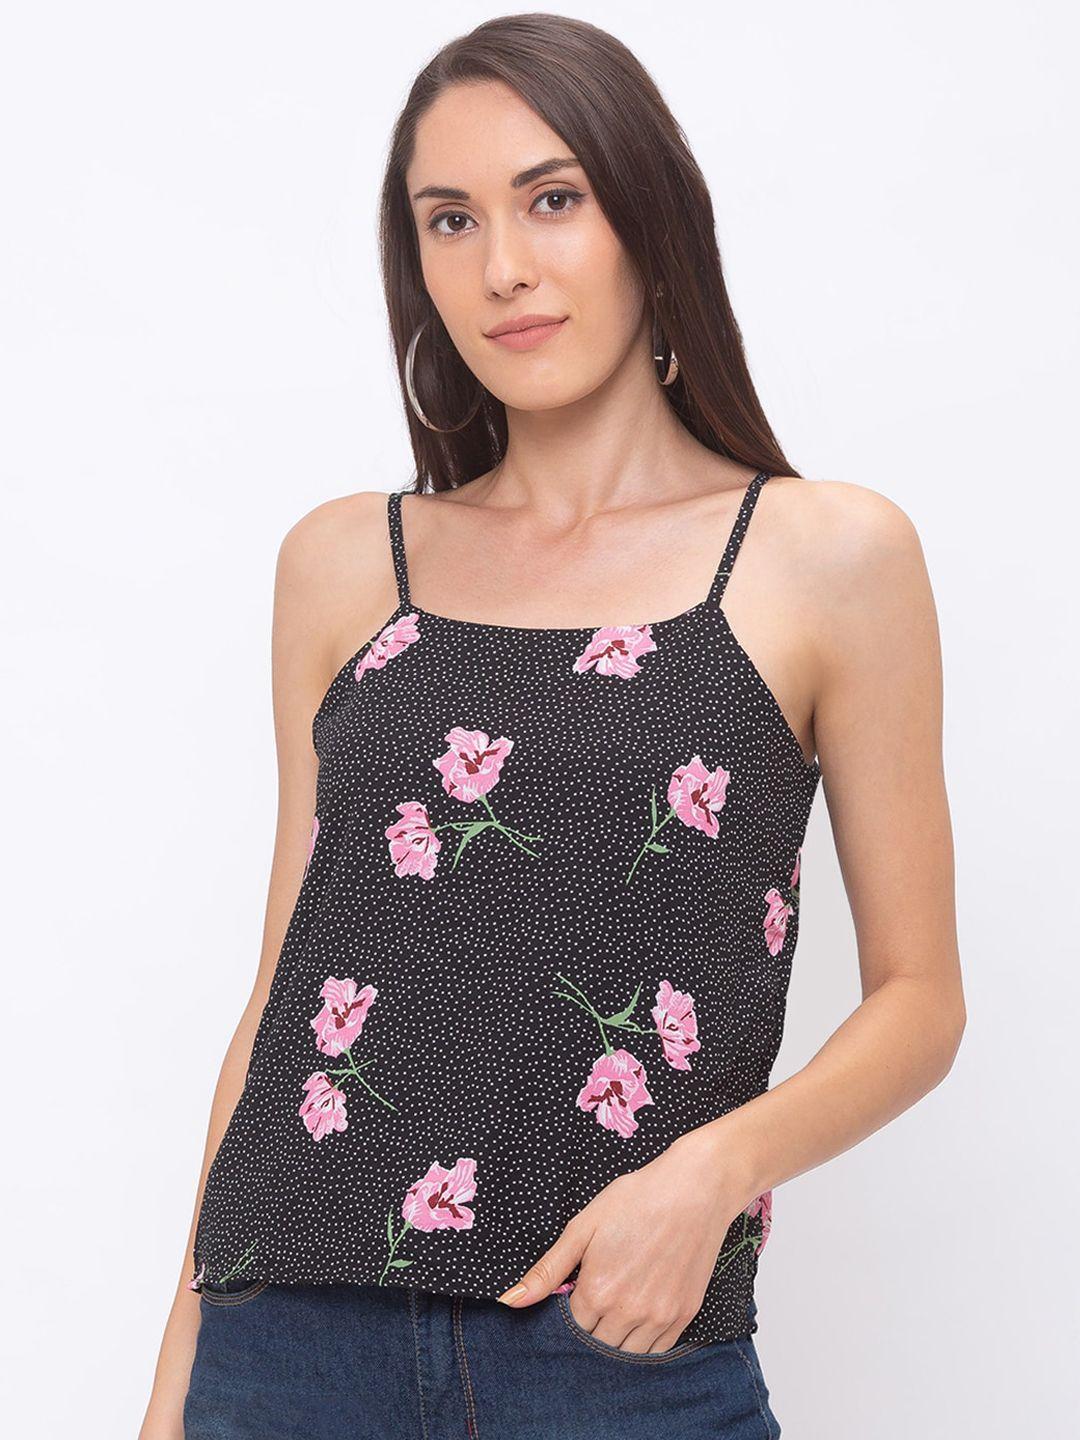 globus women black & pink floral print pure cotton top